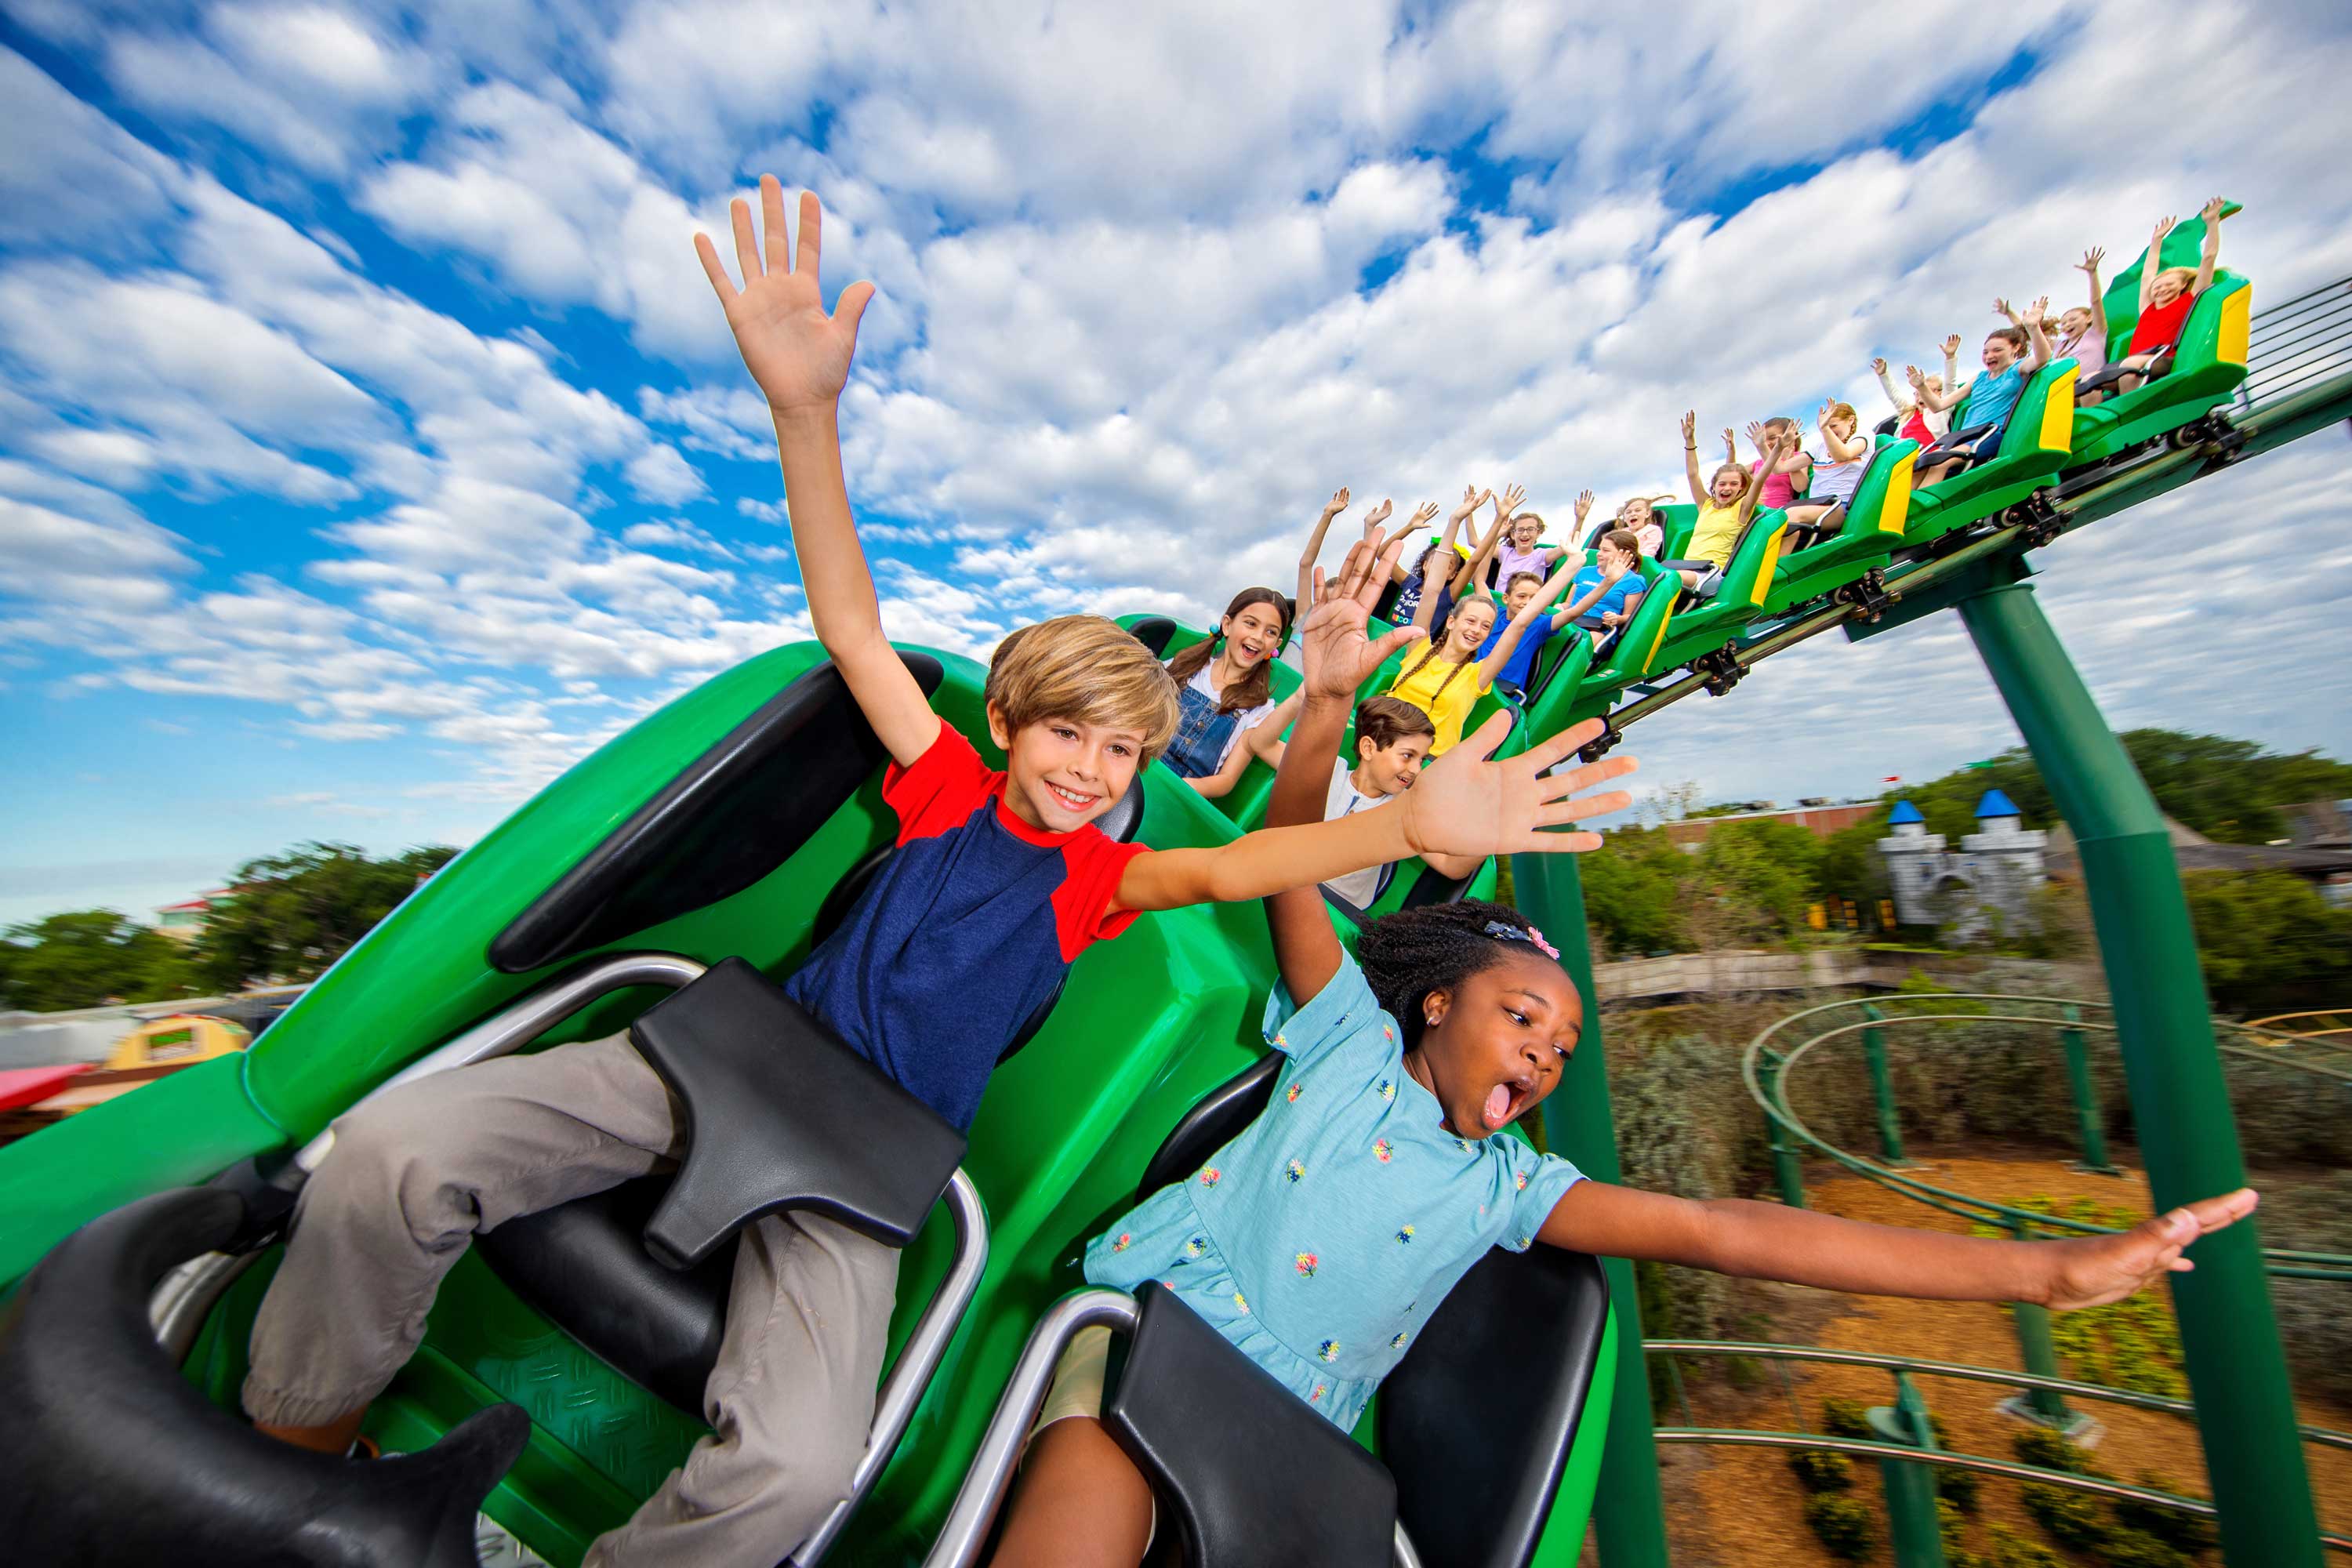 Kids on roller coaster